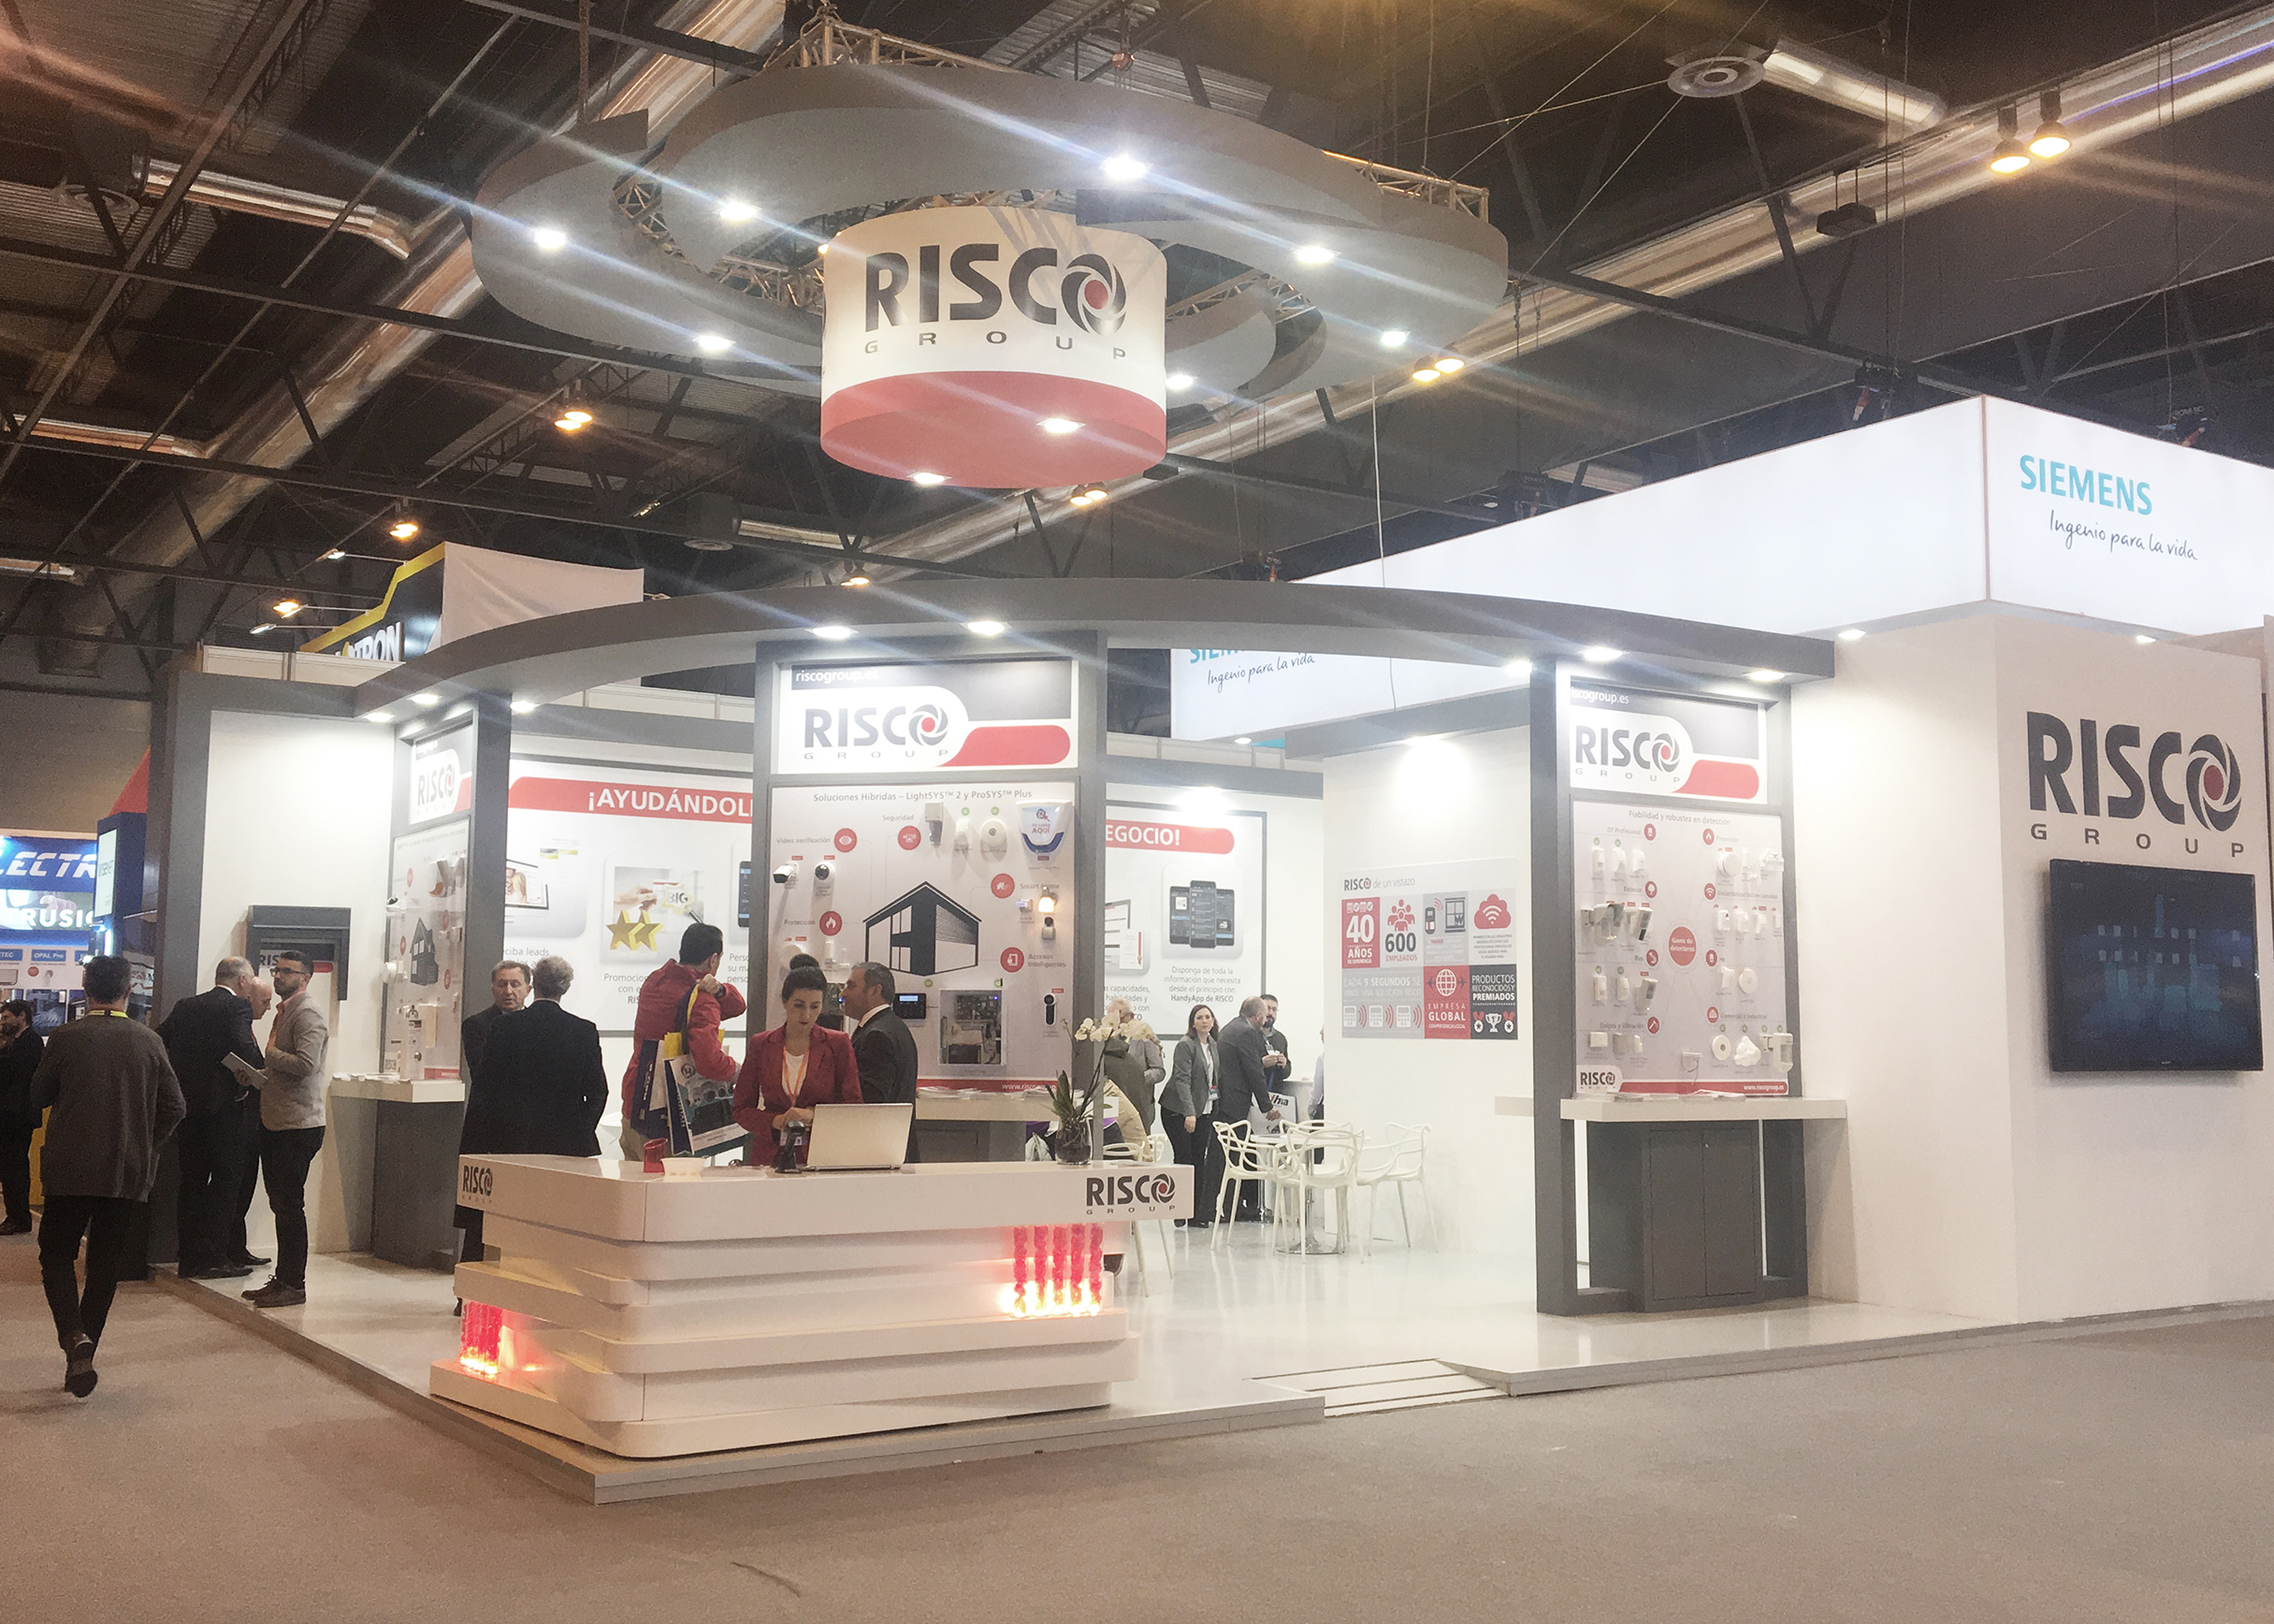 Stand de Risco Group en Sicur 2018